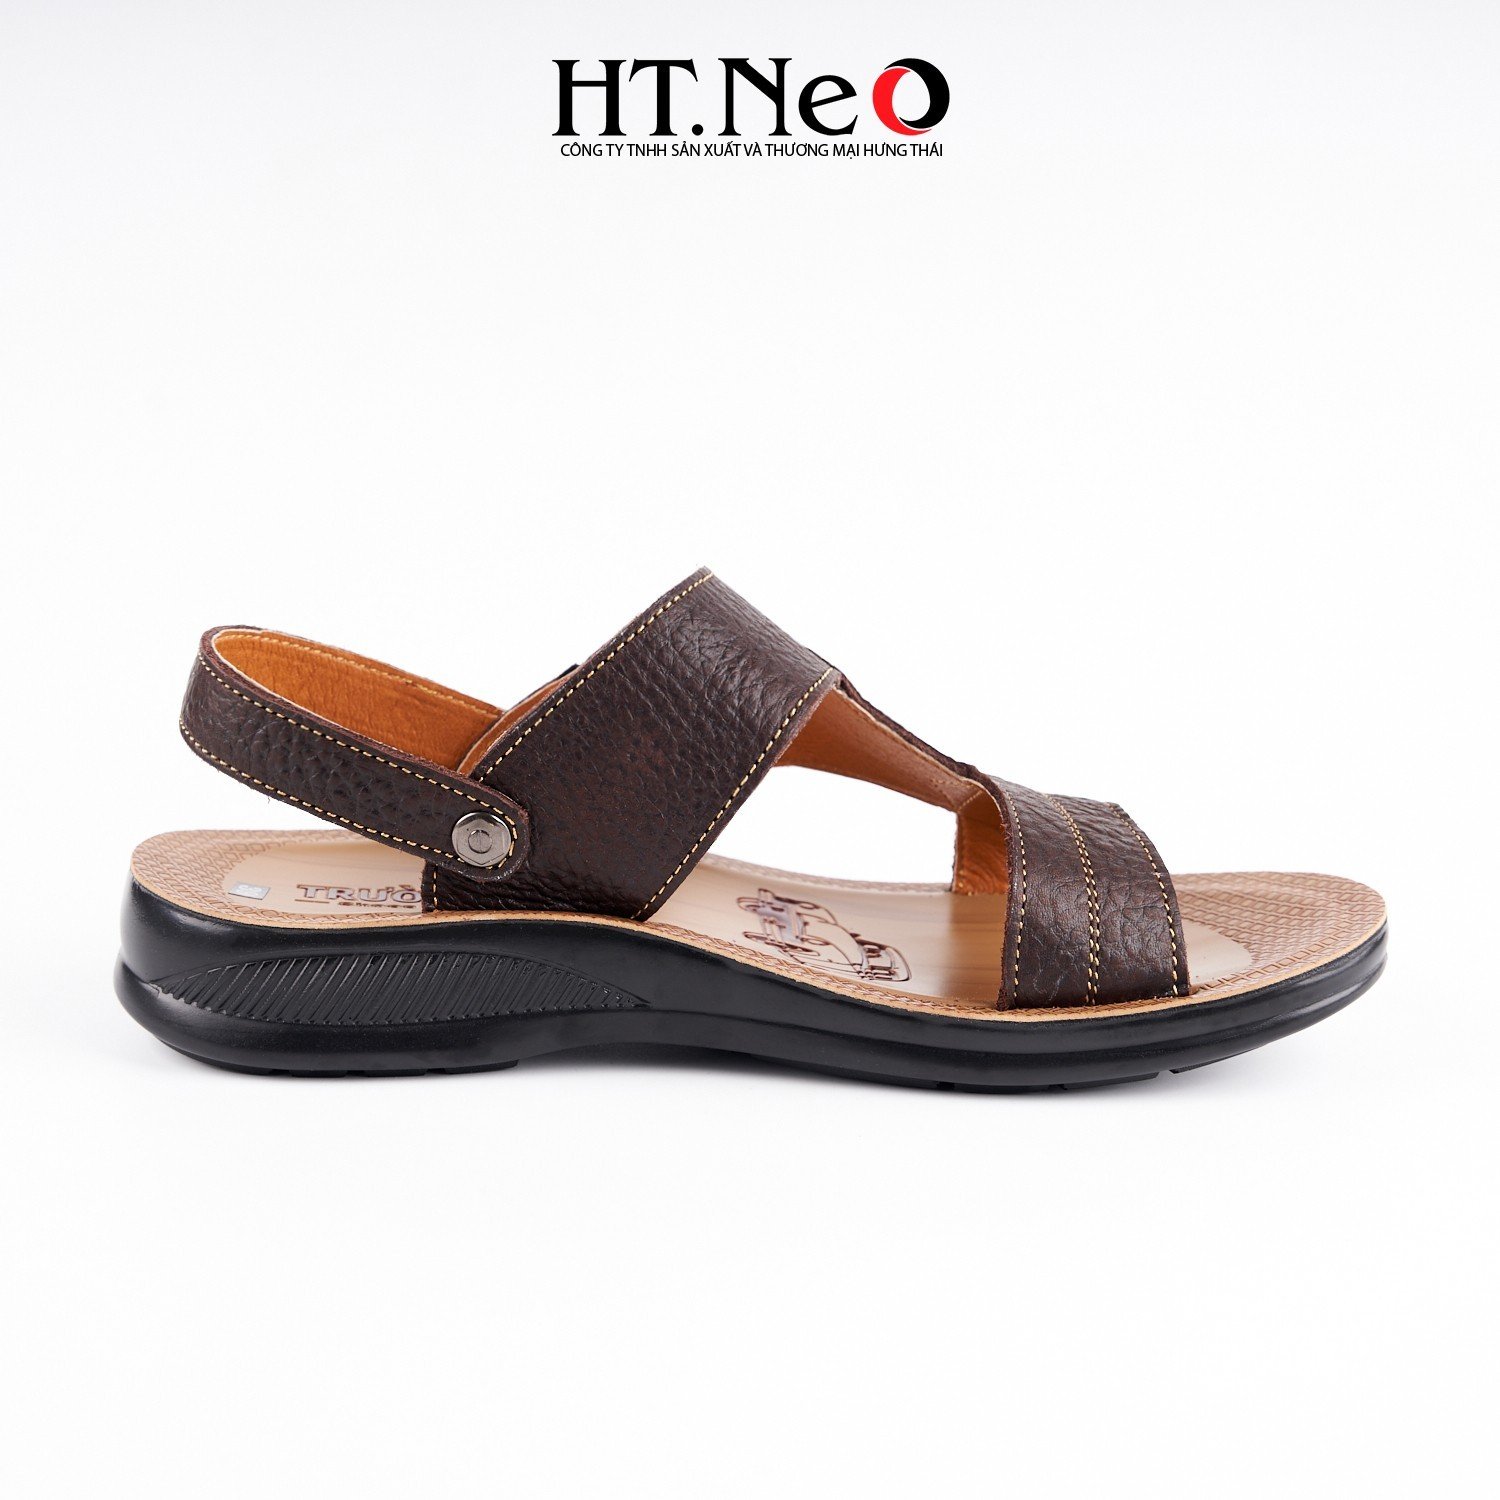 Sandal nam, dép sandal nam chất liệu da cao cấp thiết kế đơn giản với những đường chỉ khâu, đế kếp đi êm chân SD170